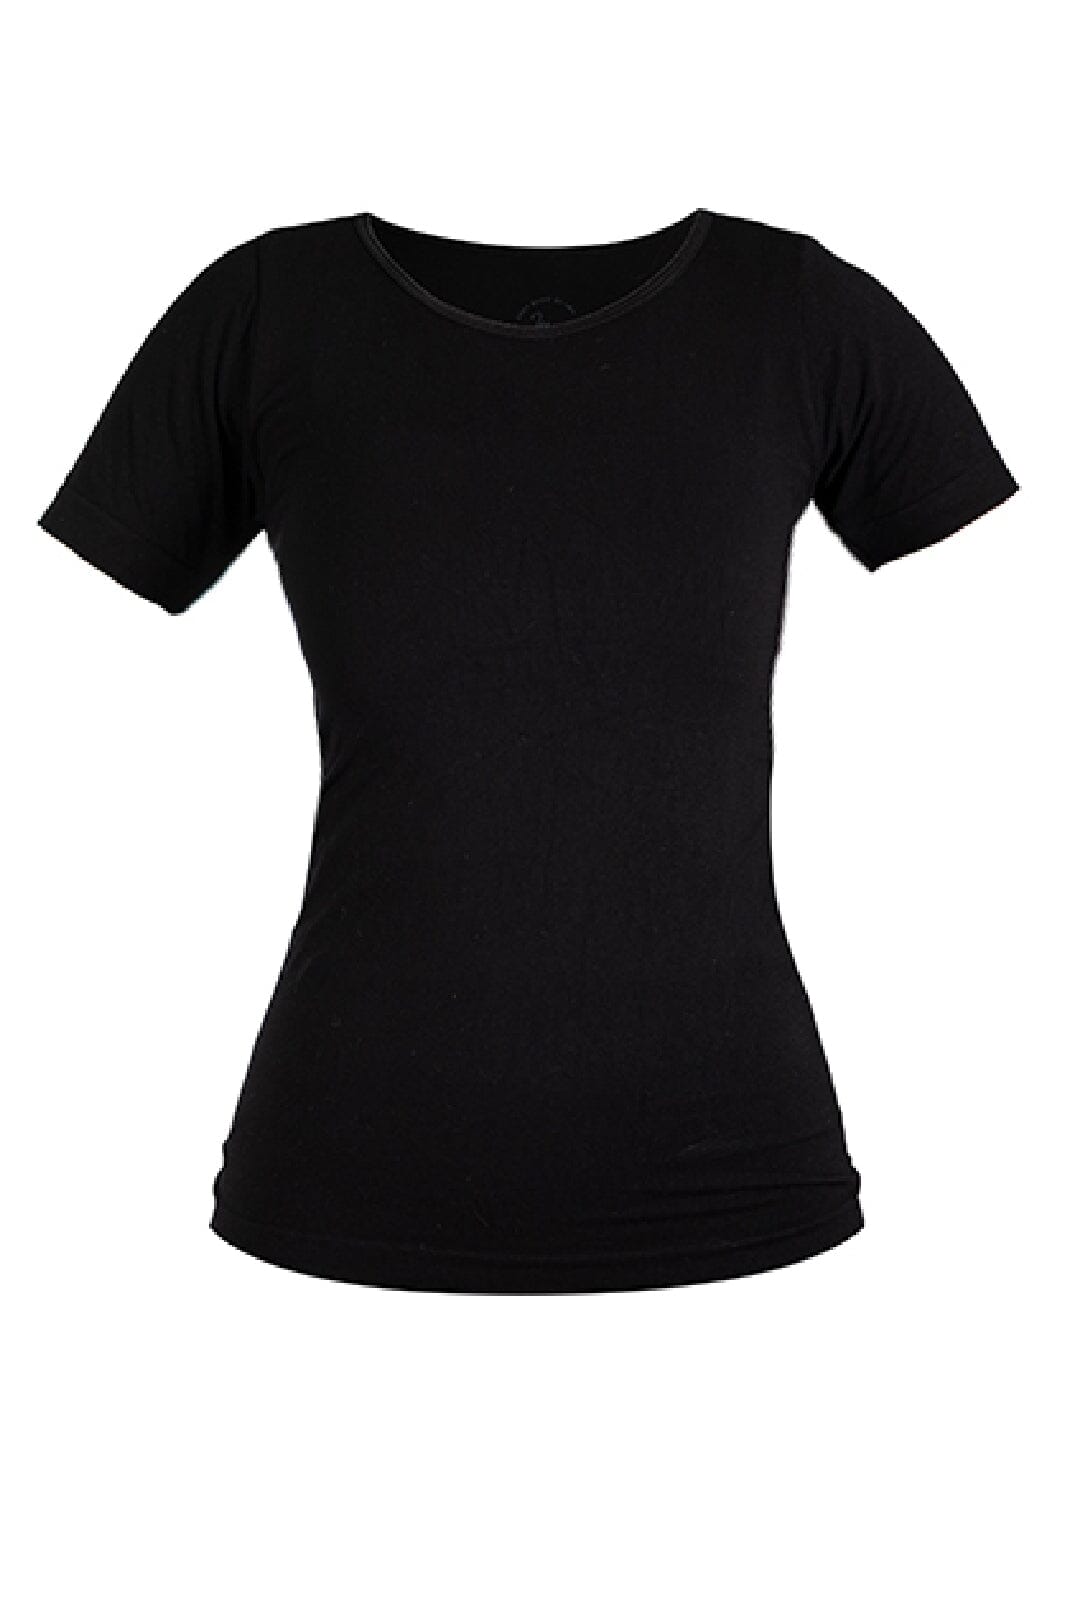 Soft basic - Haily t-shirt 2 pak - black T-shirts 